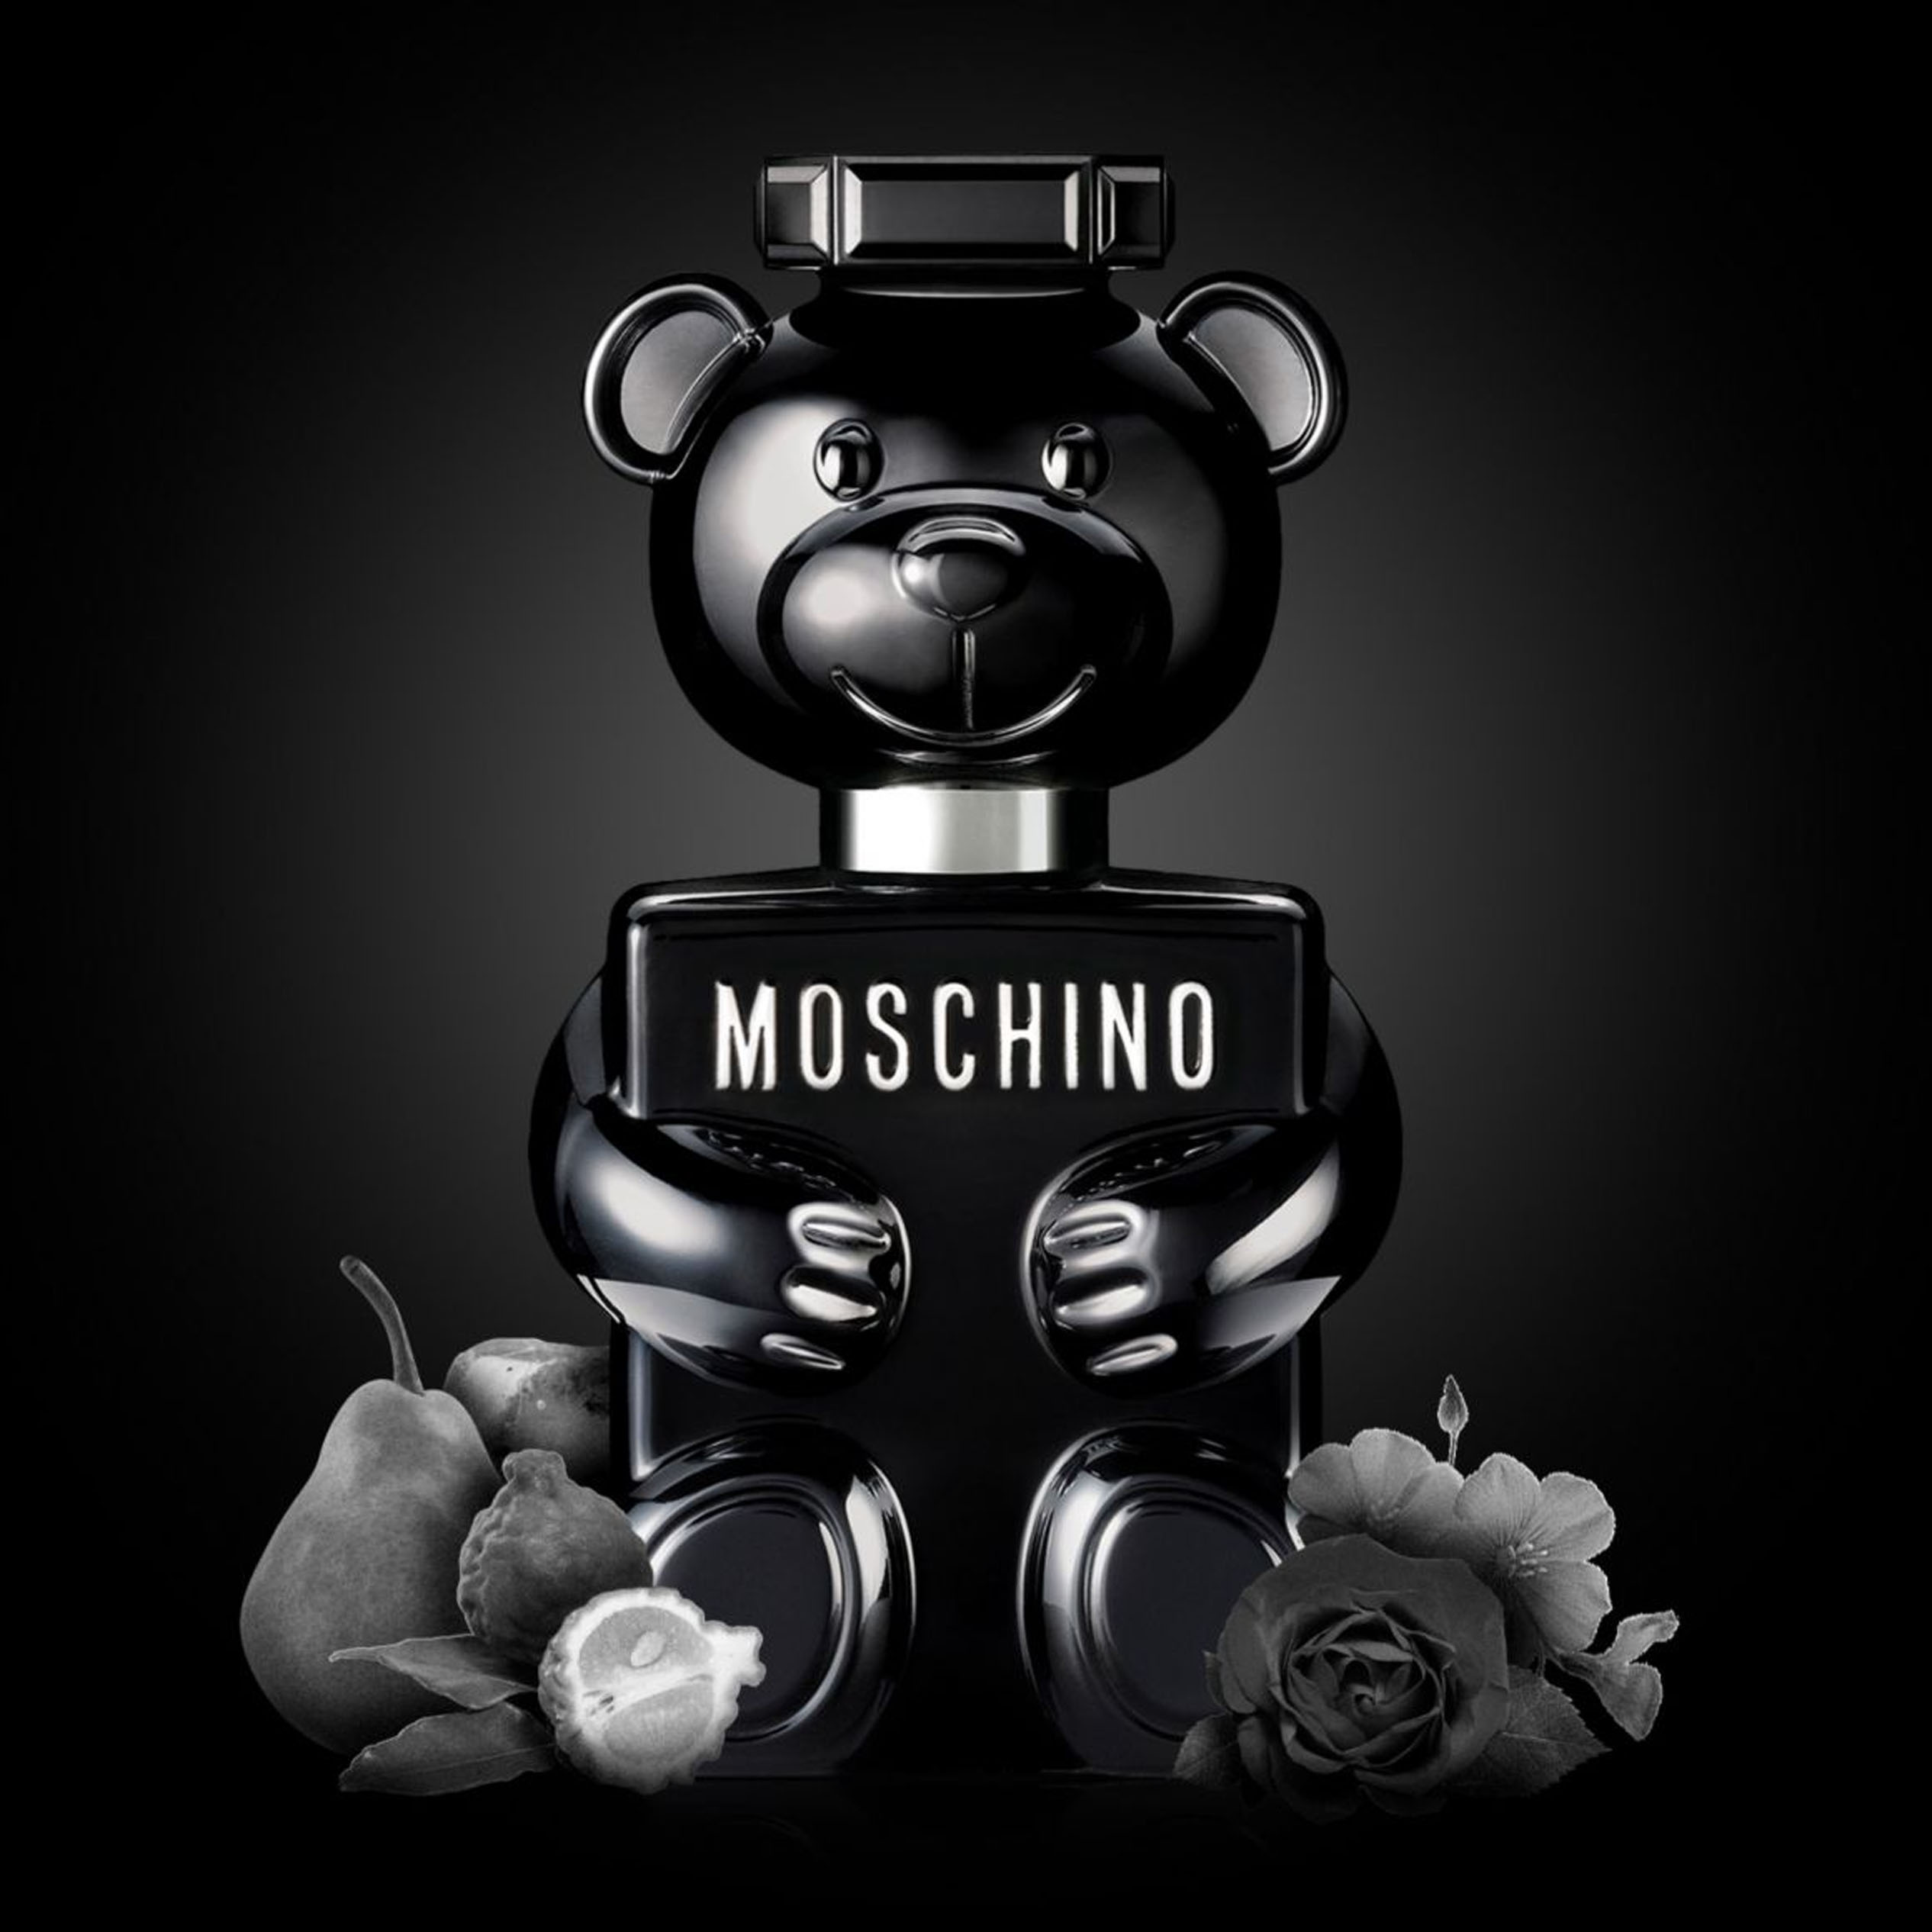 Perfume Toy Boy Moschino   (Replica Con Fragancia Importada)- Hombre